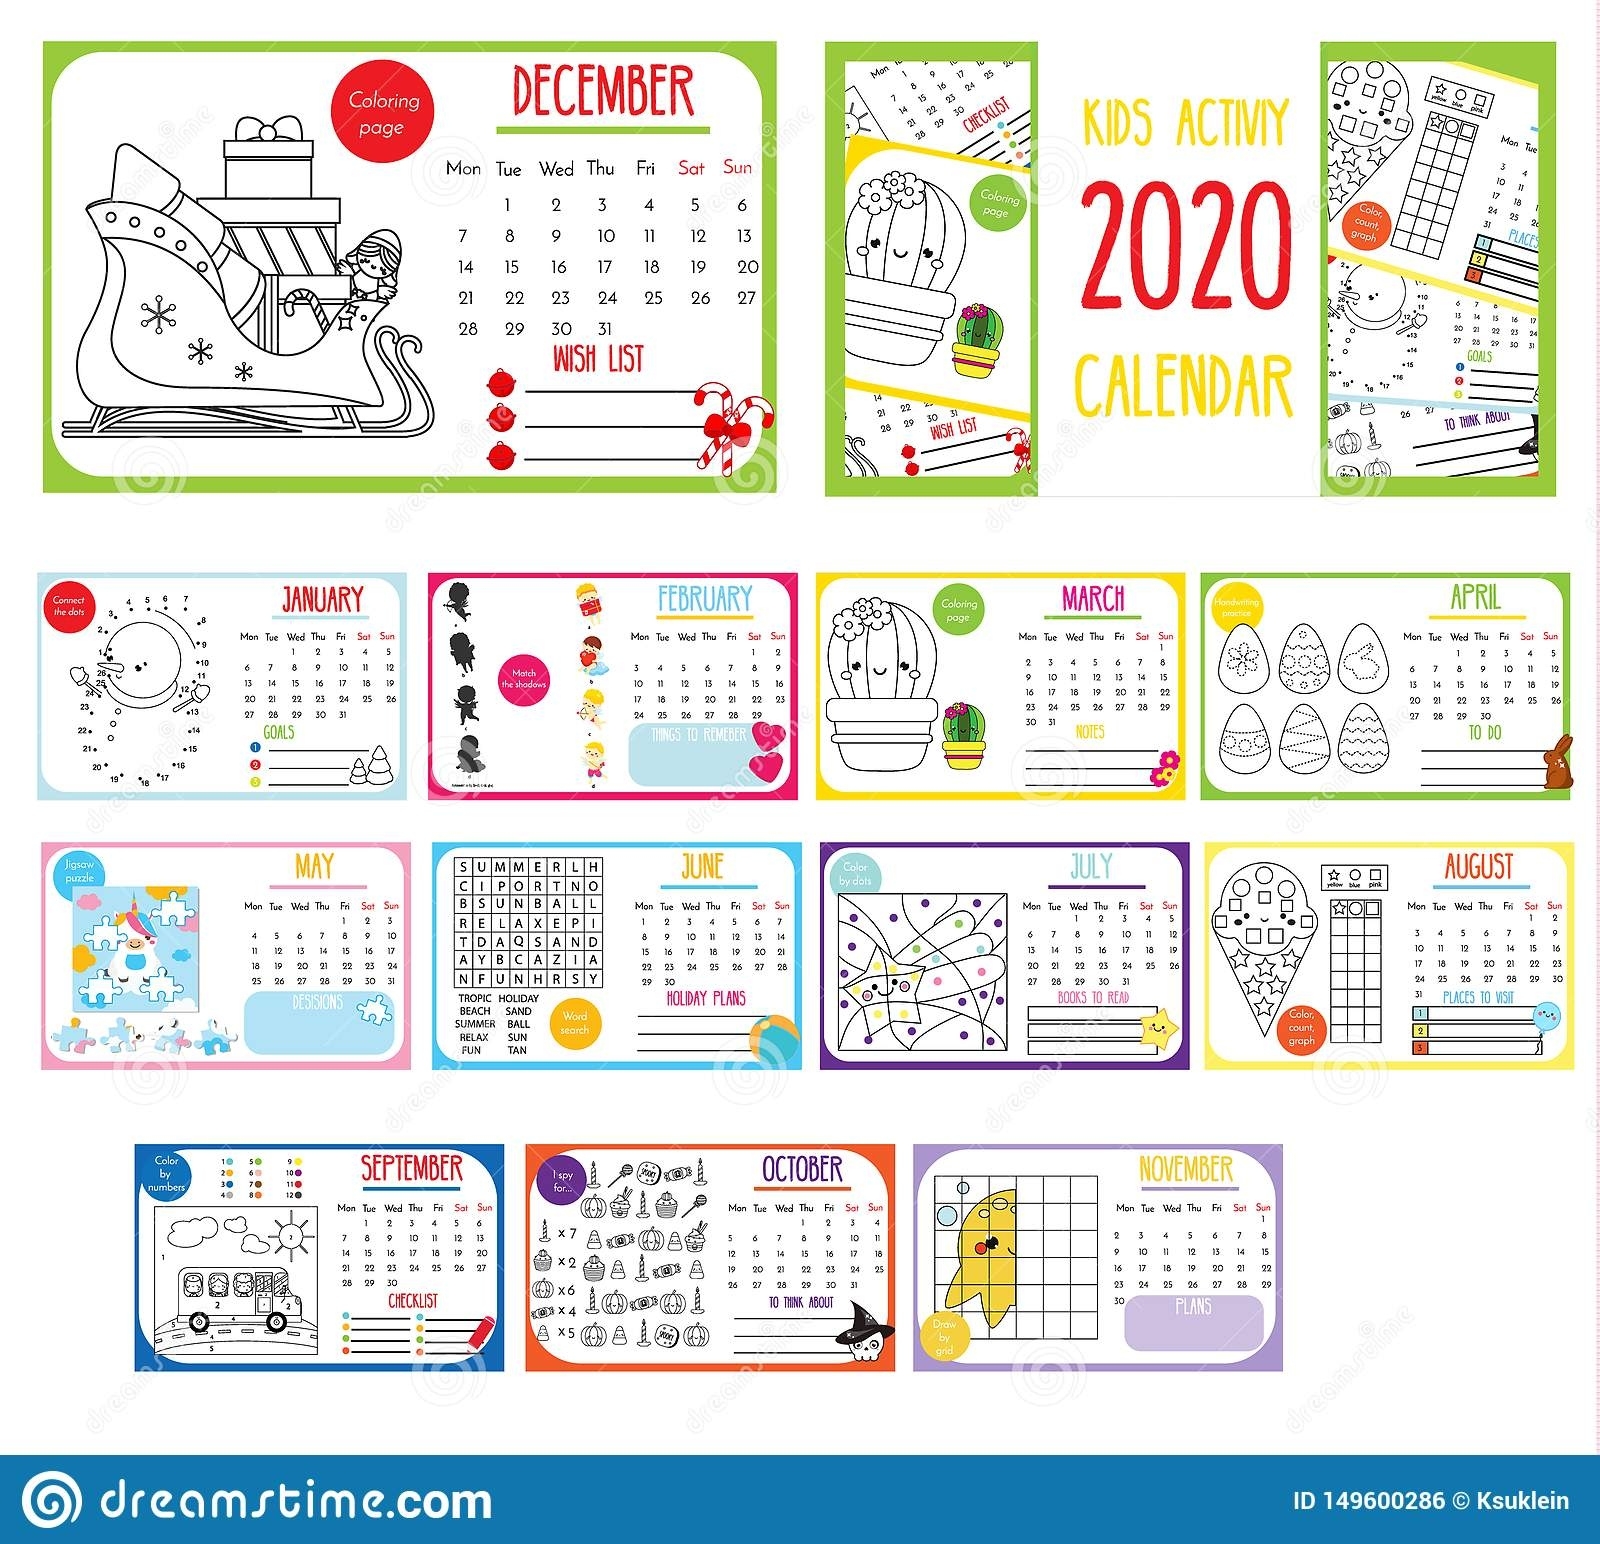 Kids Activity Calendar. 2020 Annual Calendar With Printable Christmas Activity Calendar 2020